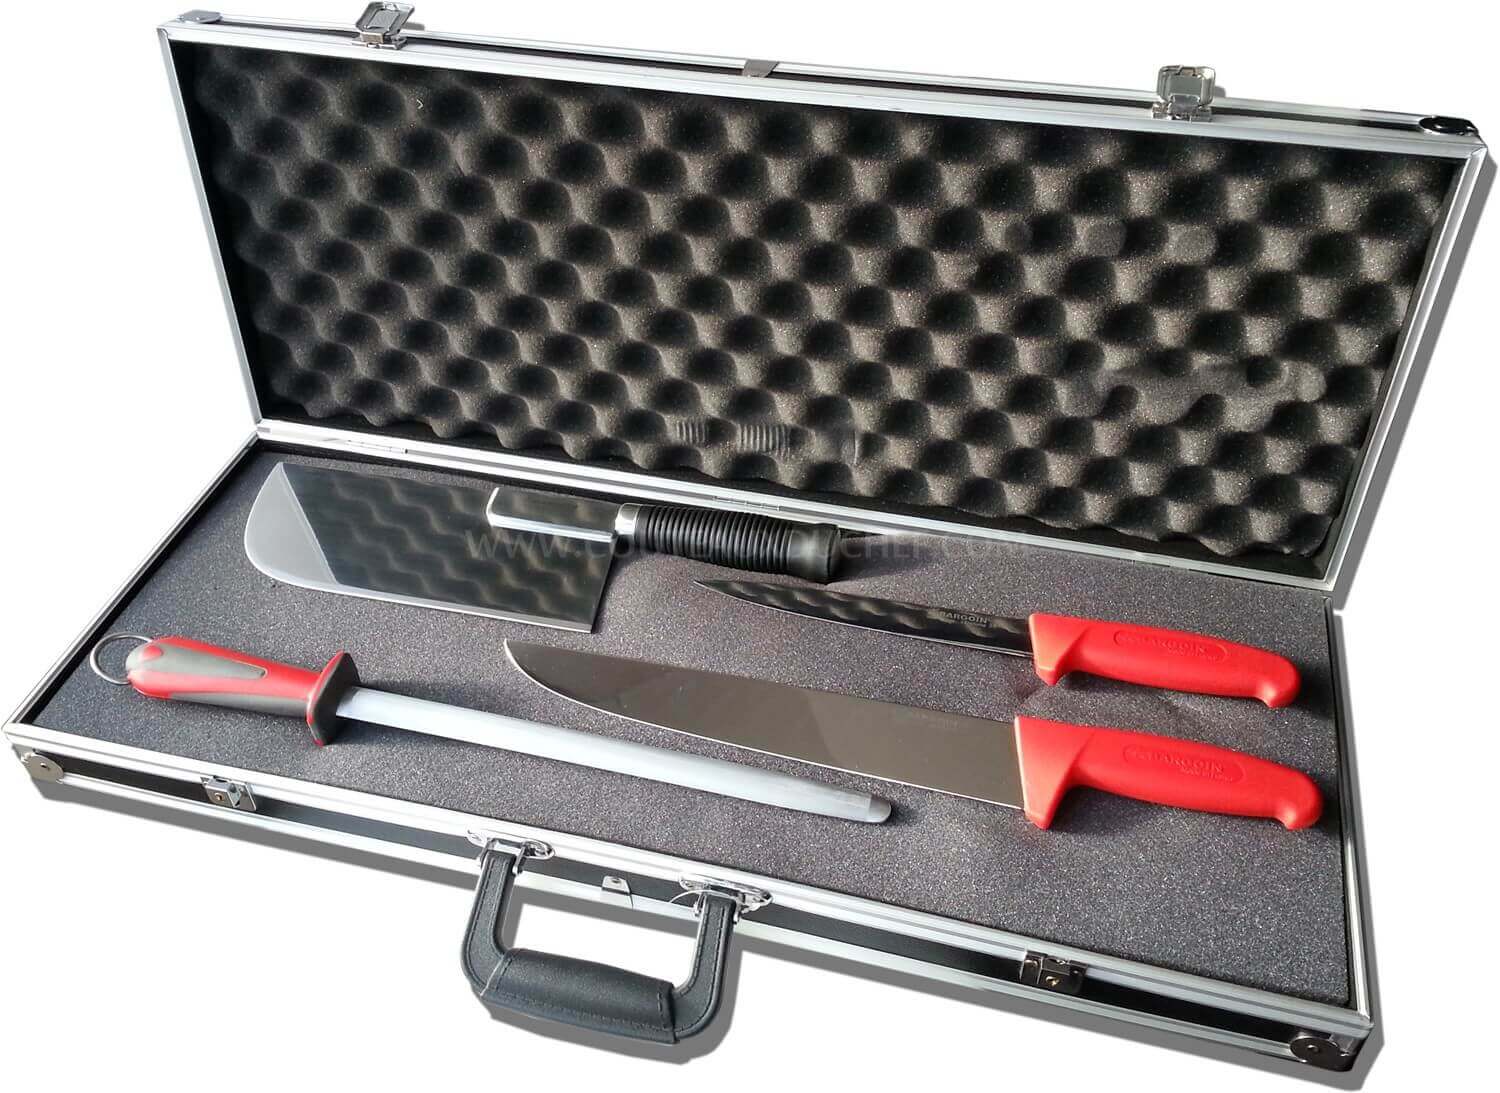 Malette de boucherie Bargoin 4 couteaux + 3 outils